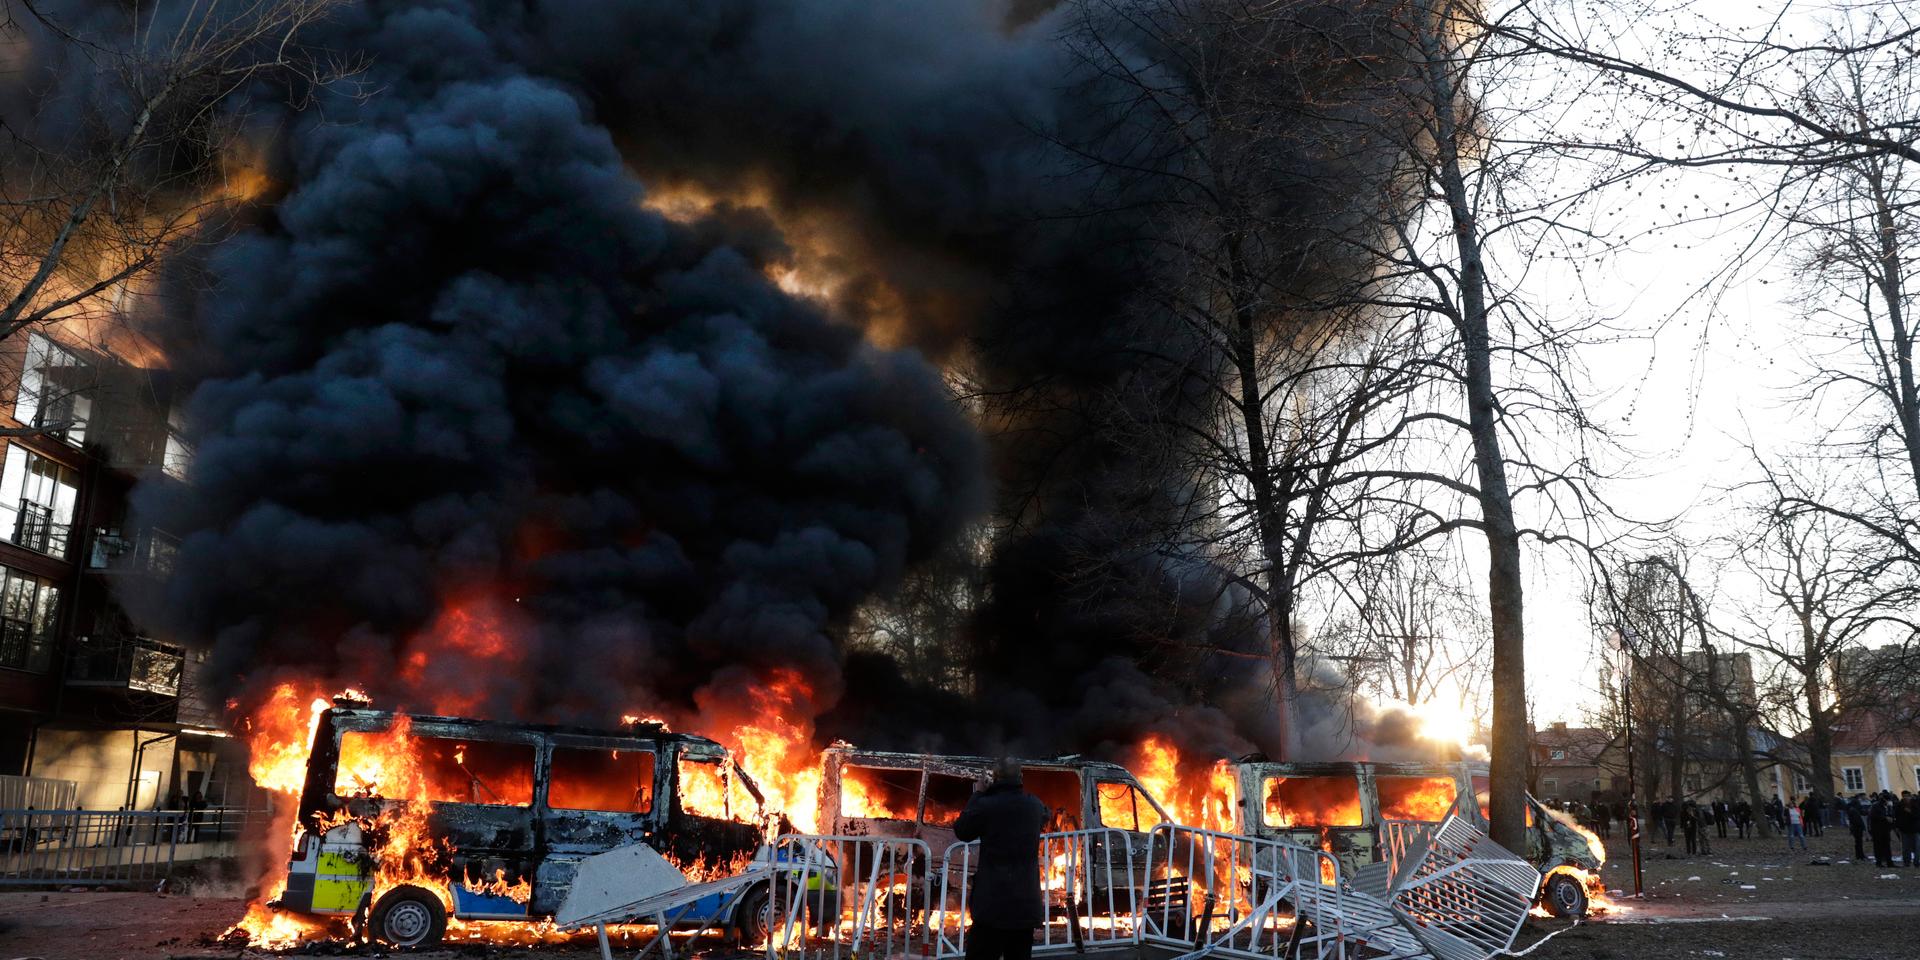 Attack. Brinnande polisbilar i Örebro under påskhelgen, då demonstrationer mot en koranbränning urartade till upplopp och våld mot poliser.